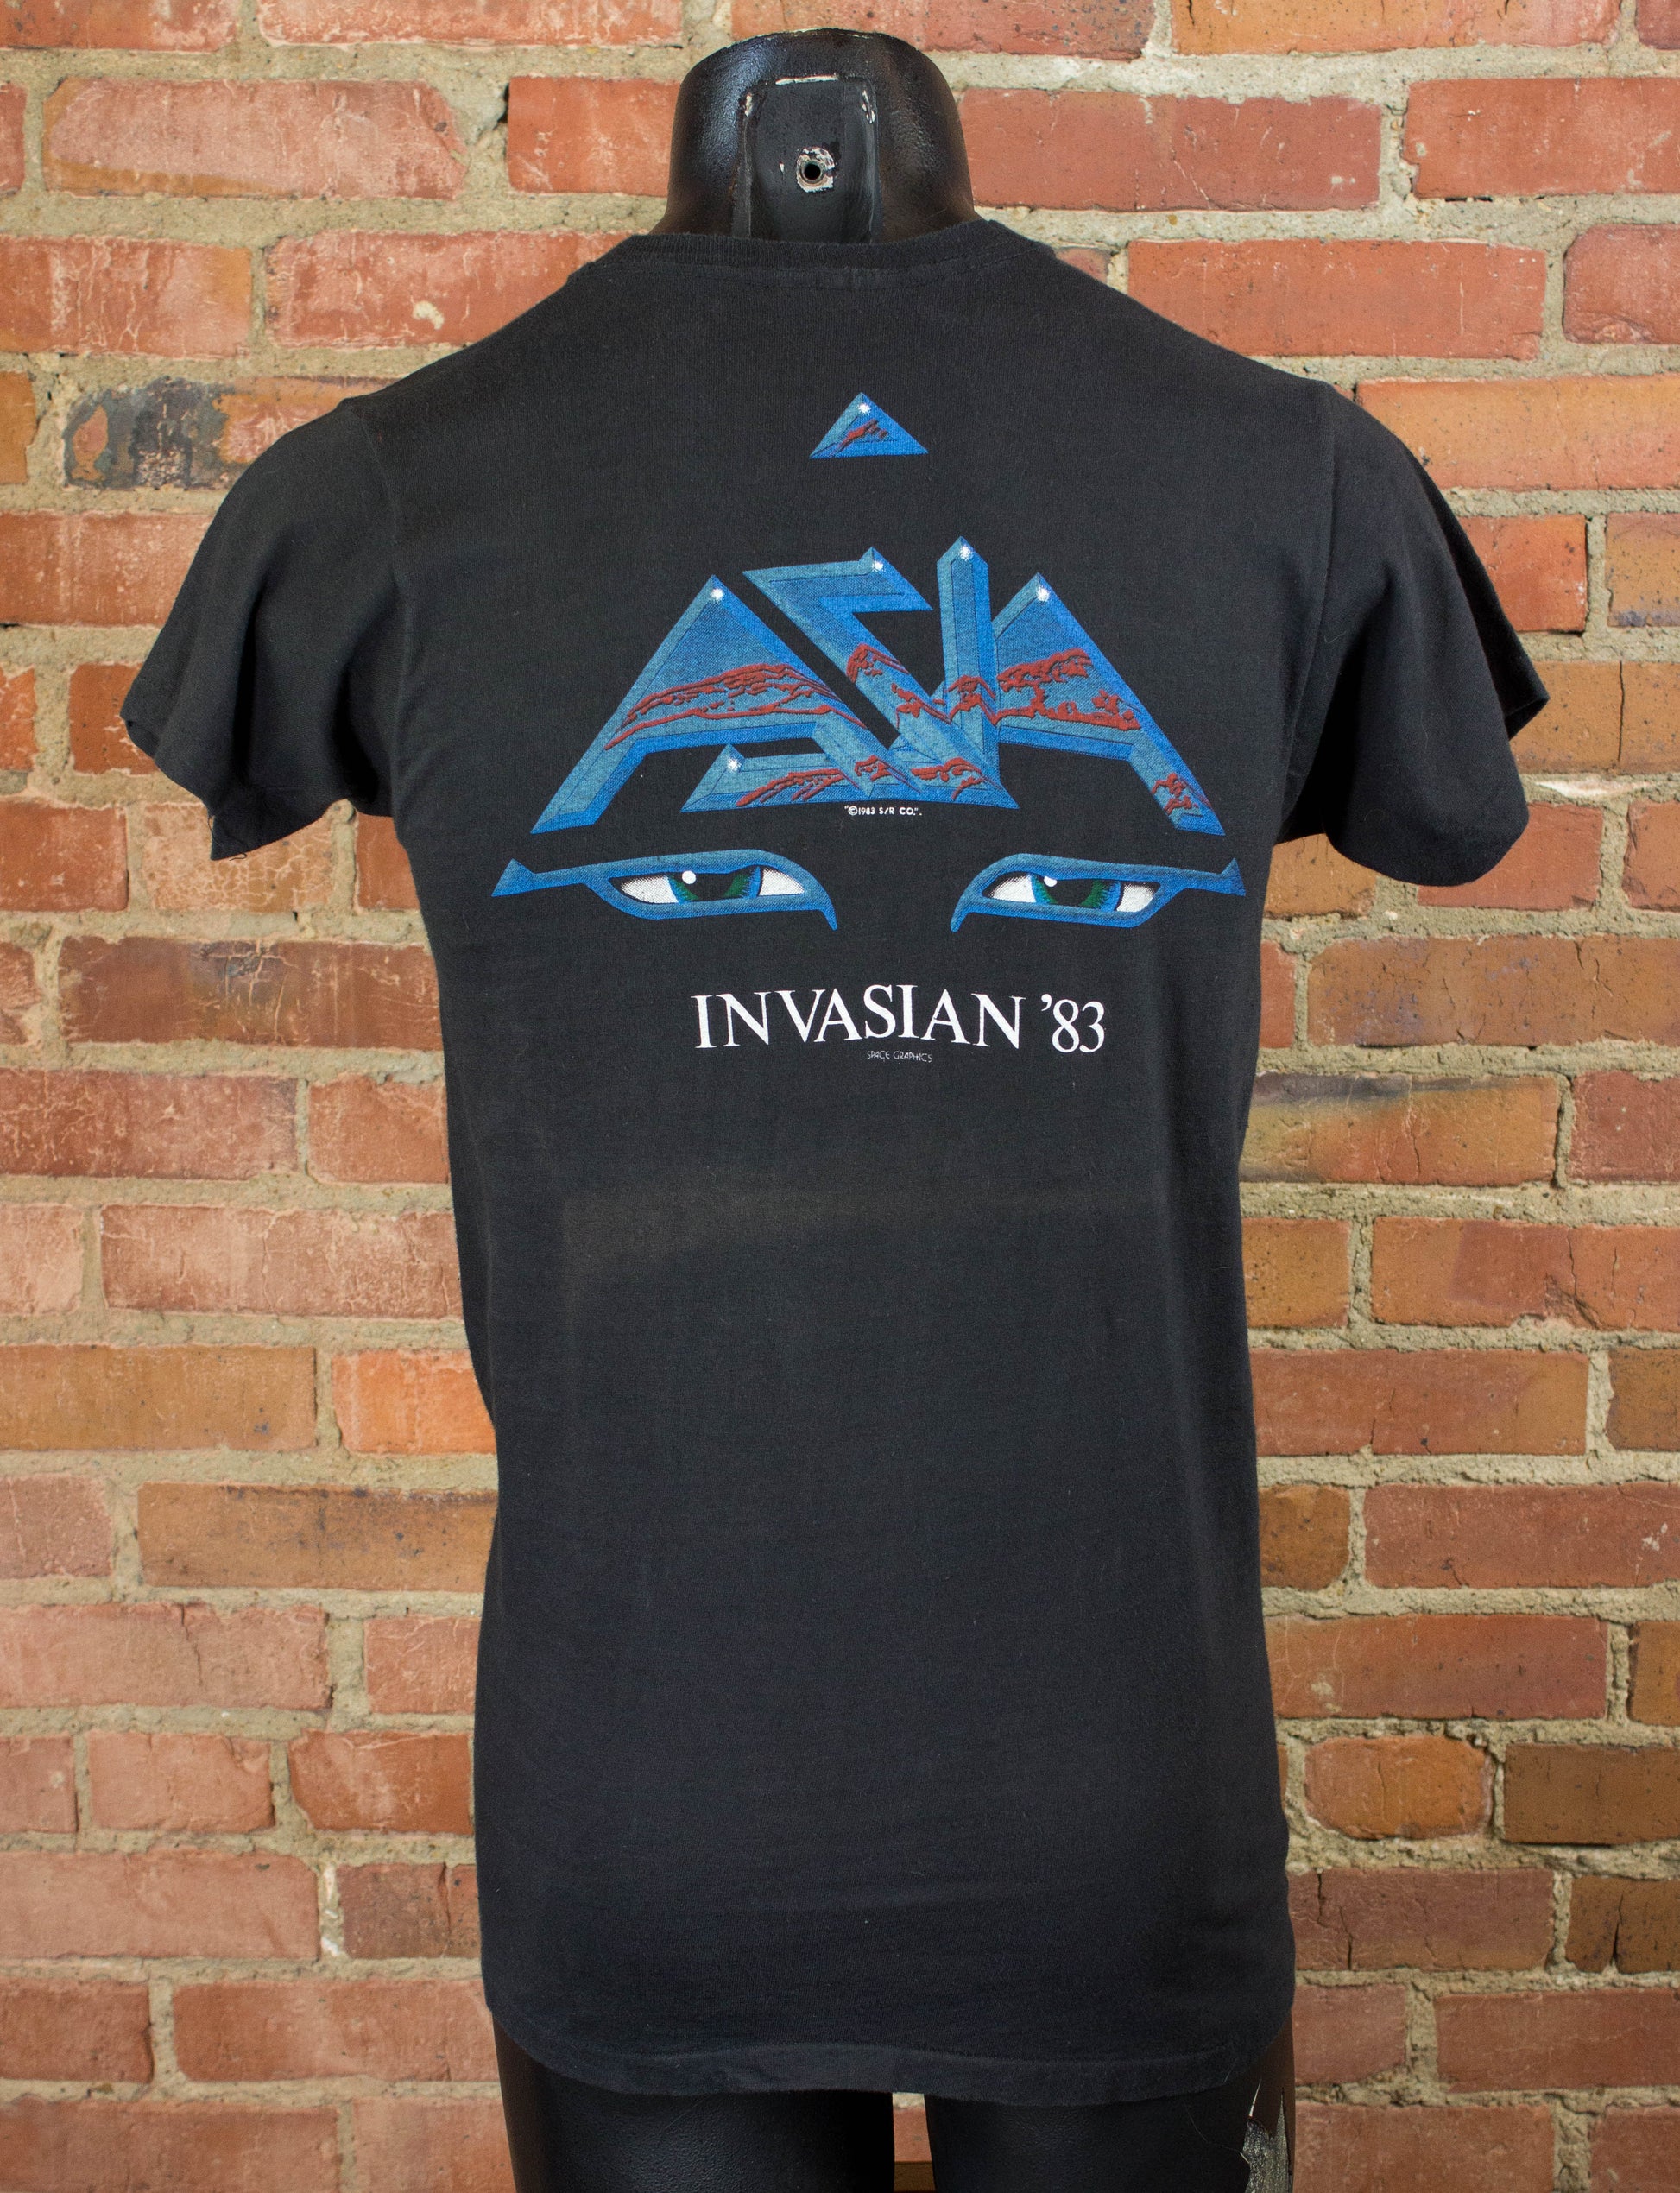 Vintage Asia 1983 Invasian Tour Black Concert T Shirt Unisex Small